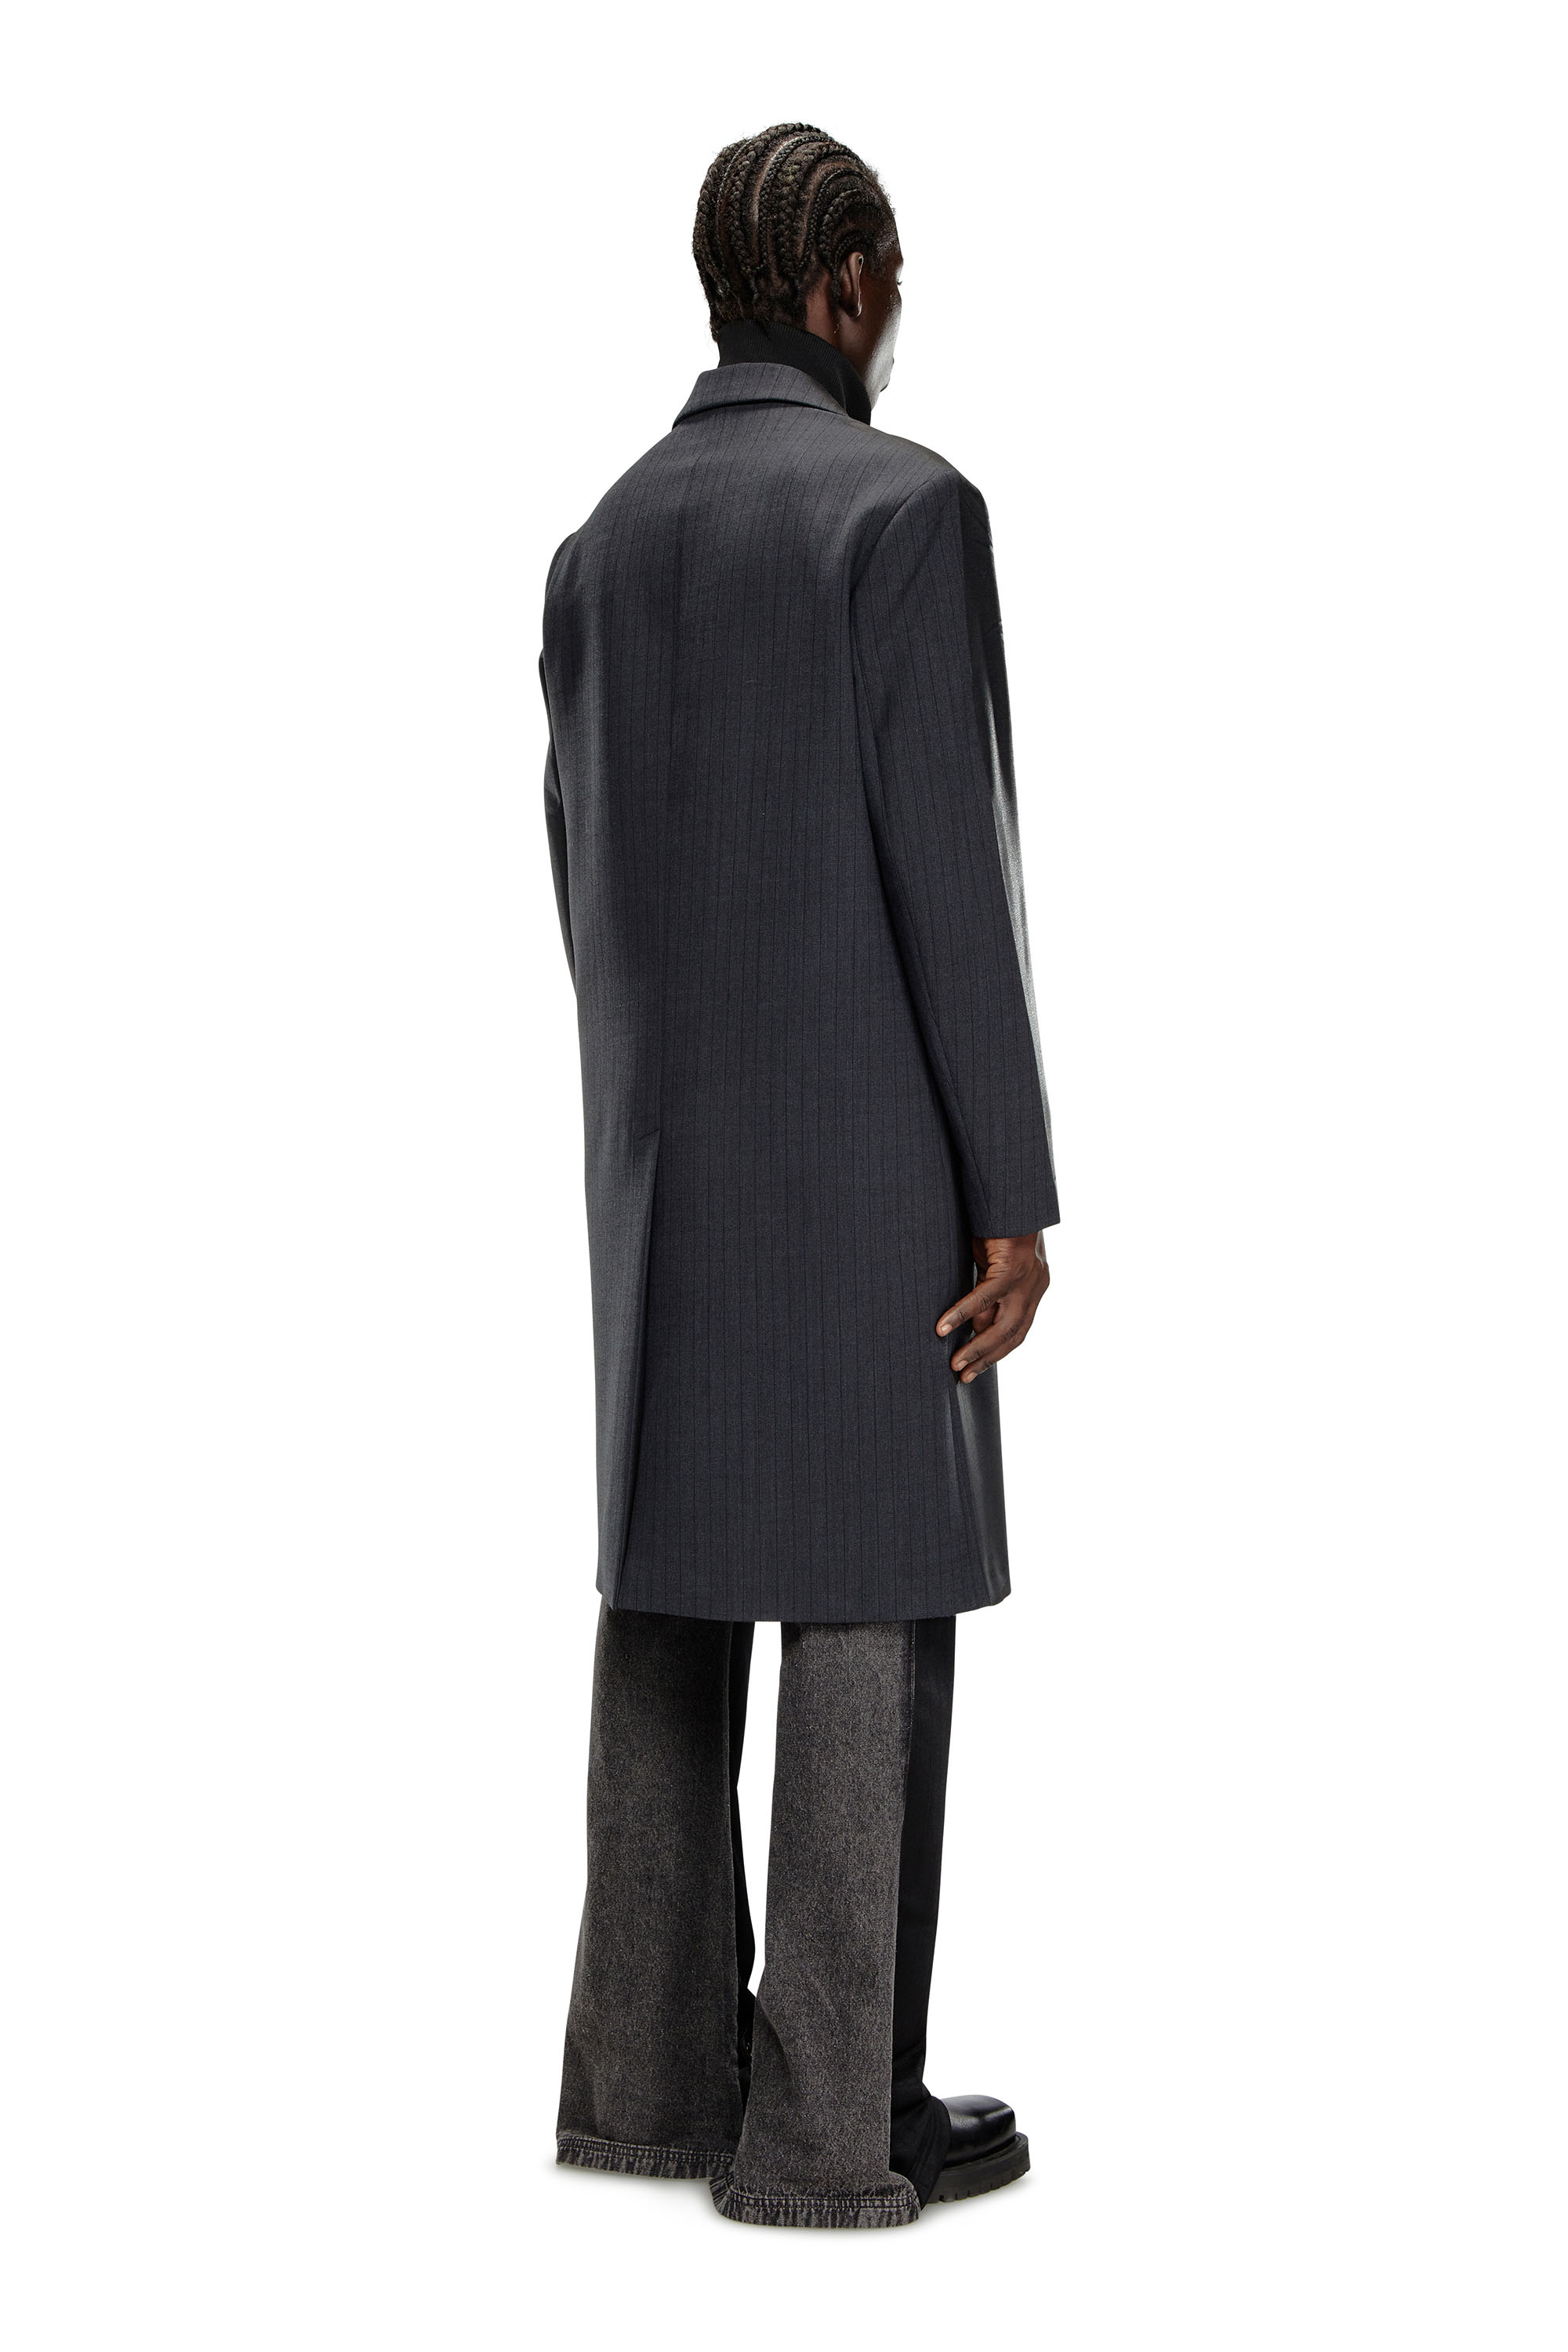 Diesel - J-DENNER, Man Coat in pinstriped cool wool in Black - Image 3